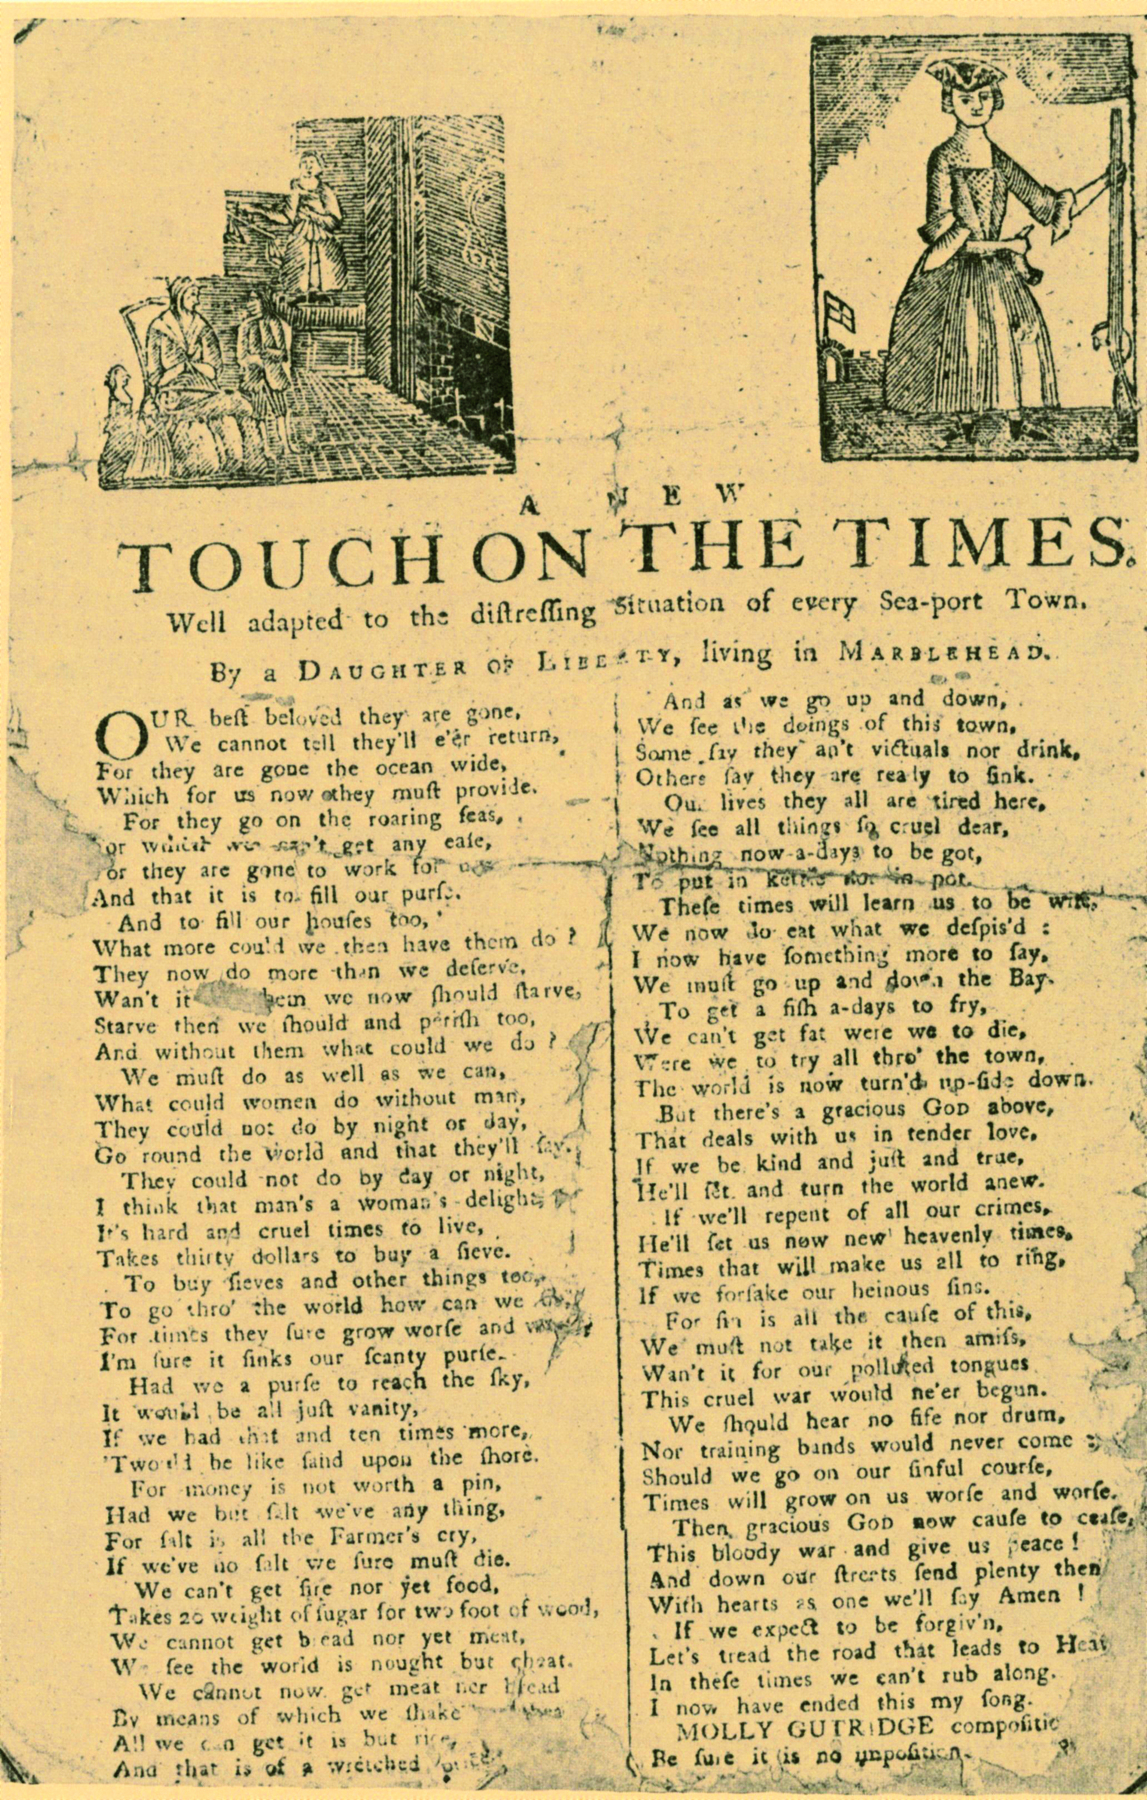 Panfleto. Página amarelada com imagens em preto e branco na parte superior, um título em preto embaixo delas, e, logo abaixo, duas colunas de texto, escrito em preto.